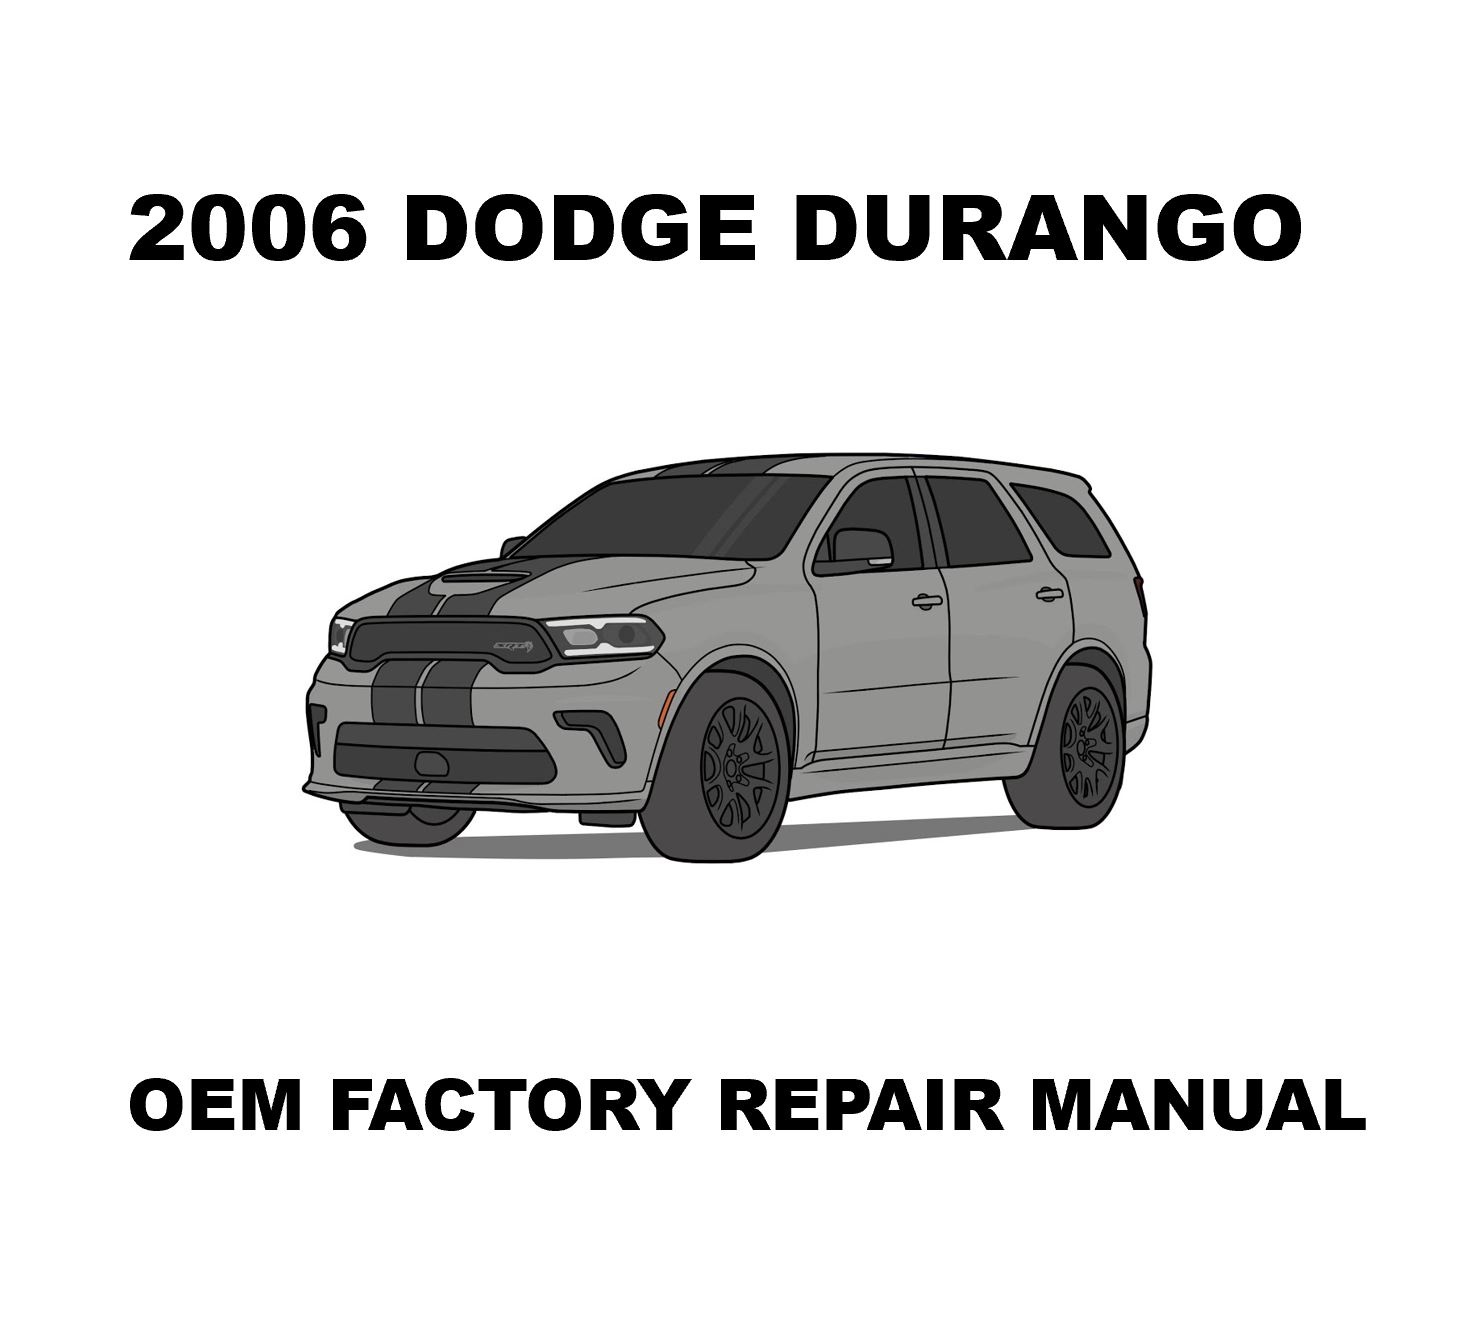 2006_dodge_durango_repair_manual_1482